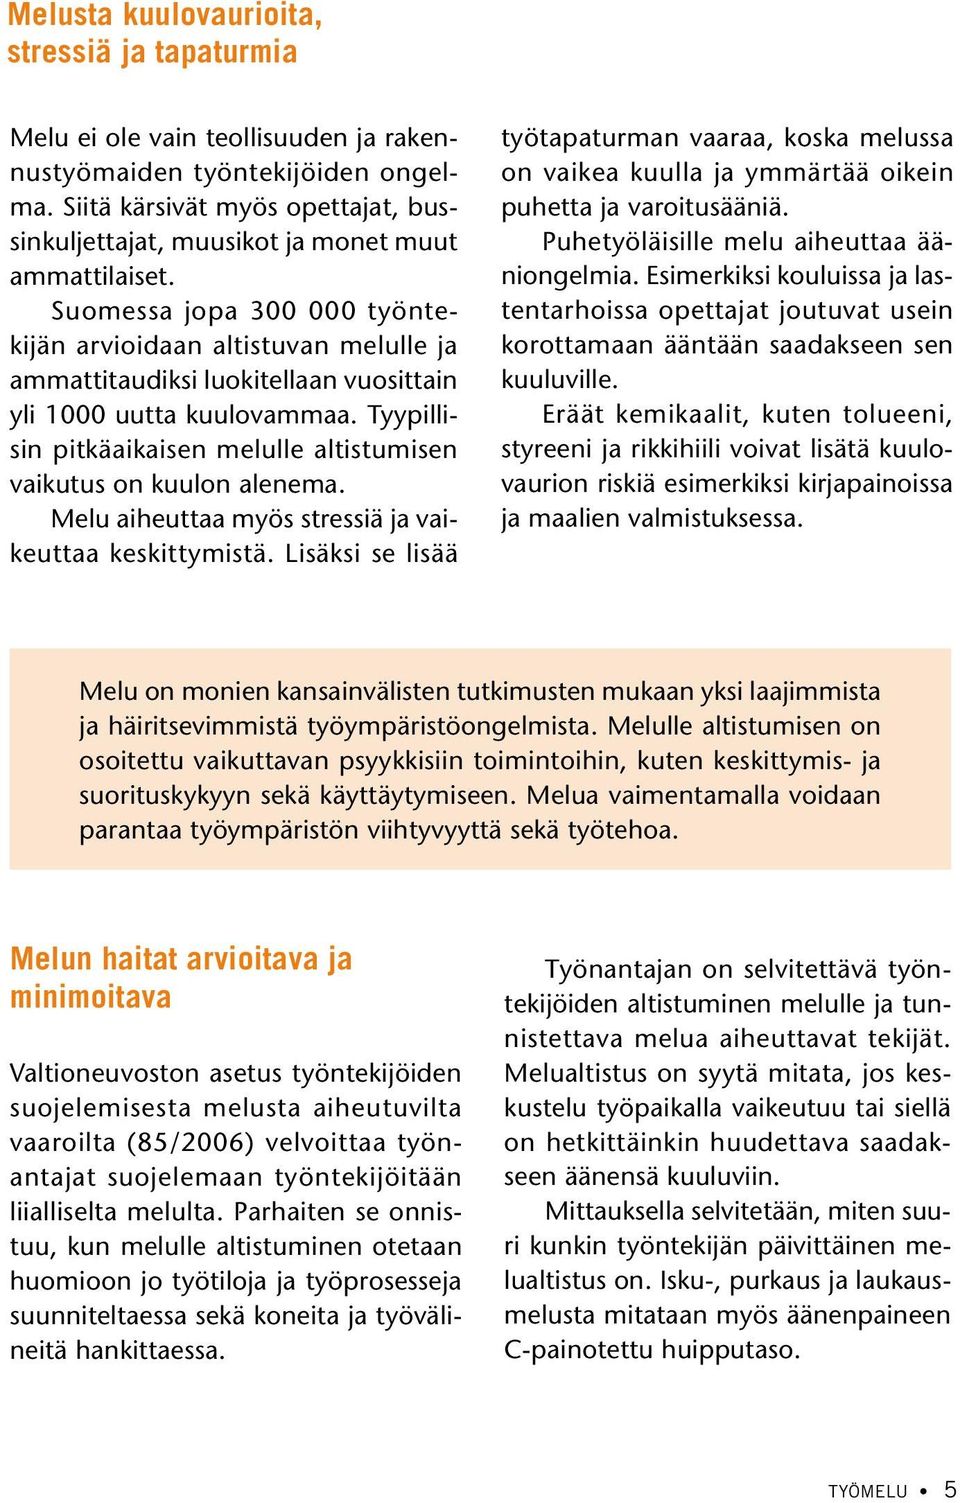 Suomessa jopa 300 000 työntekijän arvioidaan altistuvan melulle ja ammattitaudiksi luokitellaan vuosittain yli 1000 uutta kuulovammaa.